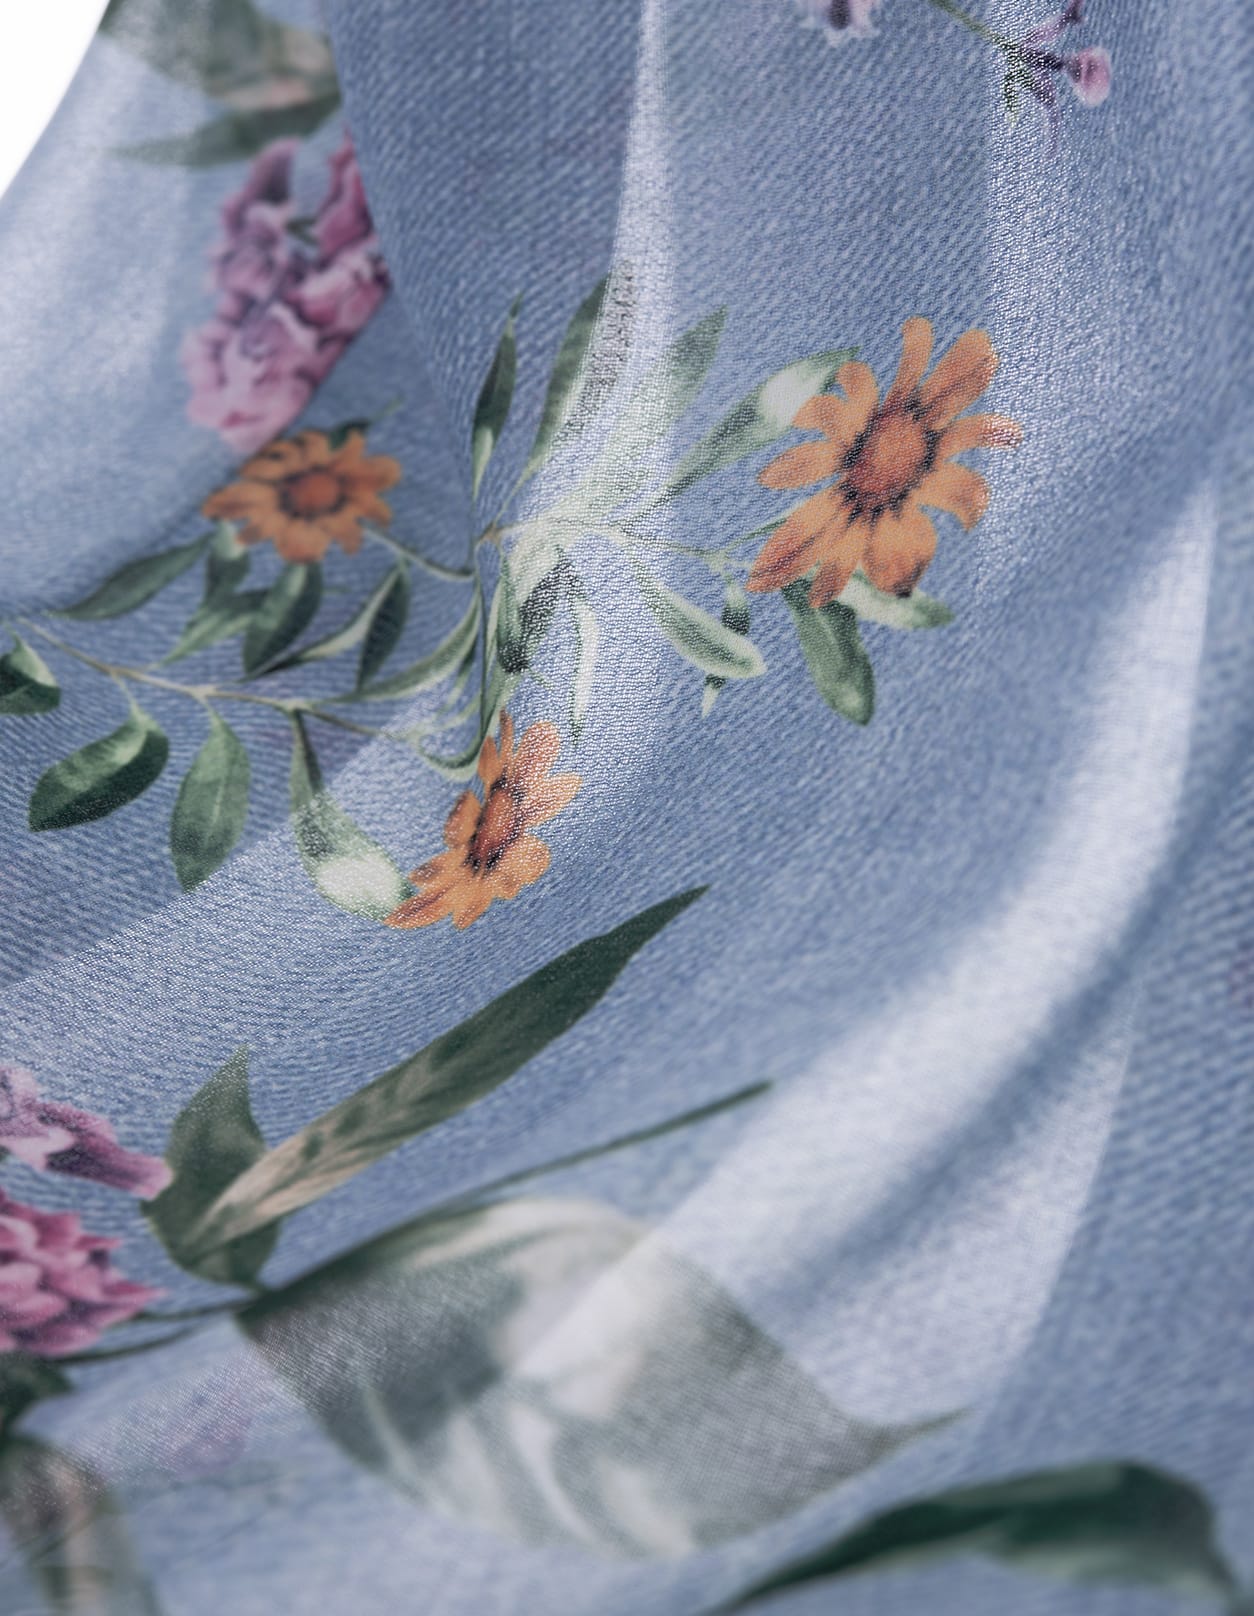 Shop Ermanno Scervino Floral Print Shirt Dress In Blue